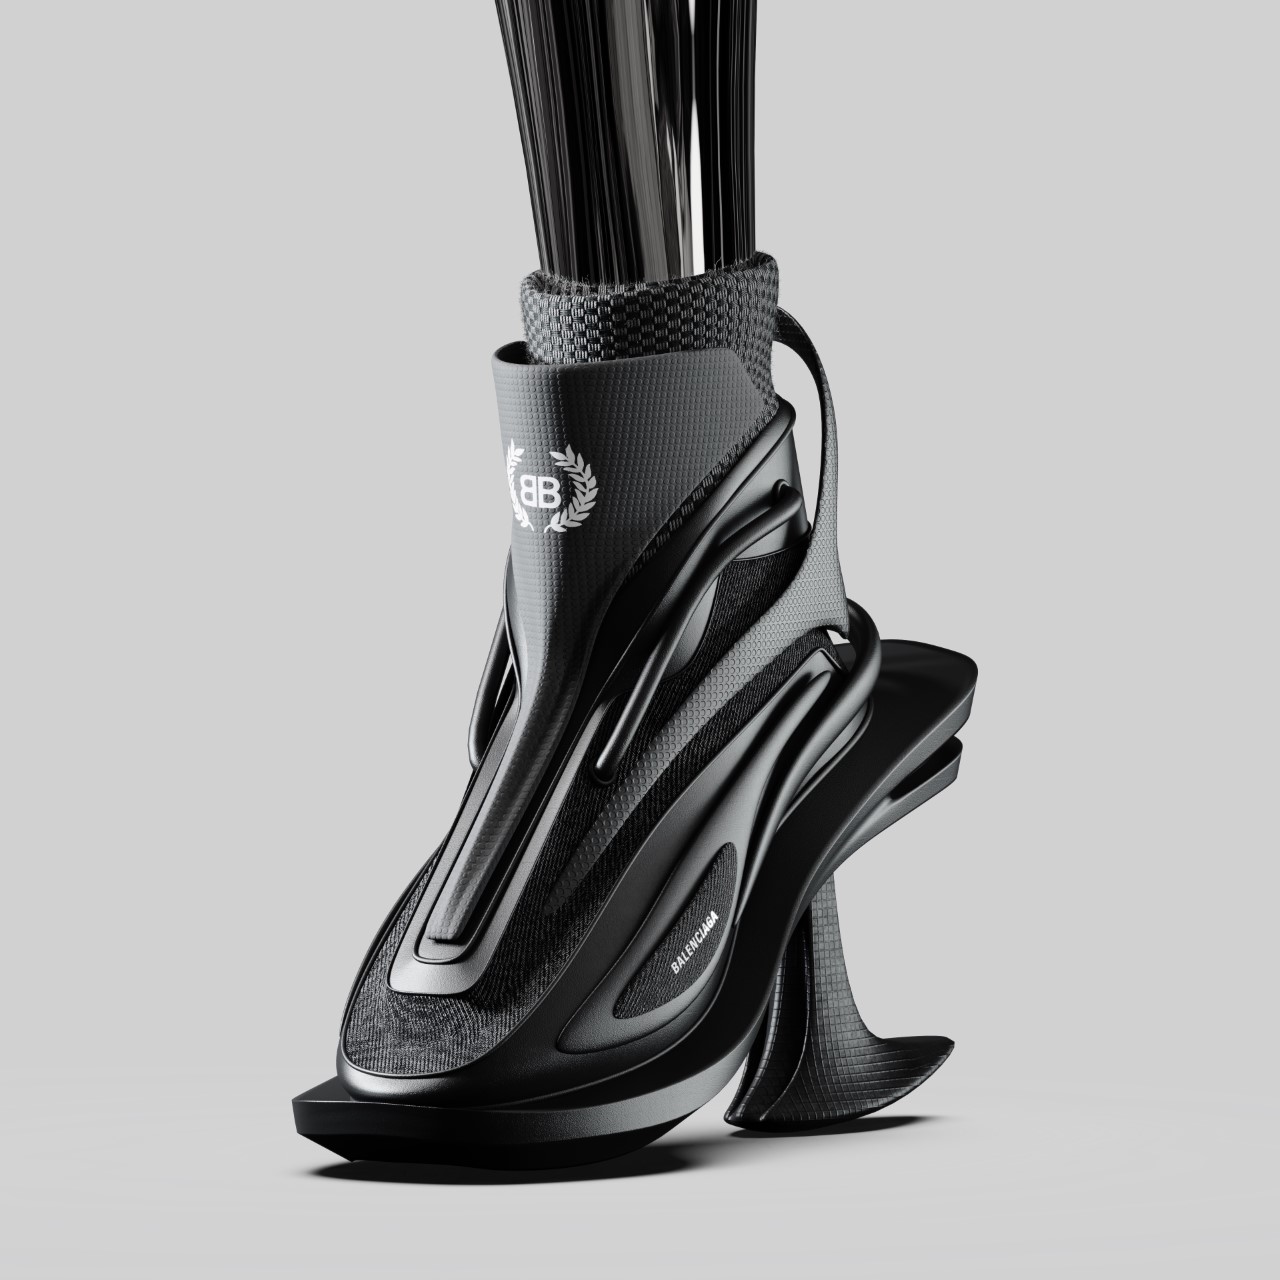 Amex Amb on Twitter 3D printed Balenciaga pumps for KimKardashian  httpstcoKlt6fMLRmb  Twitter